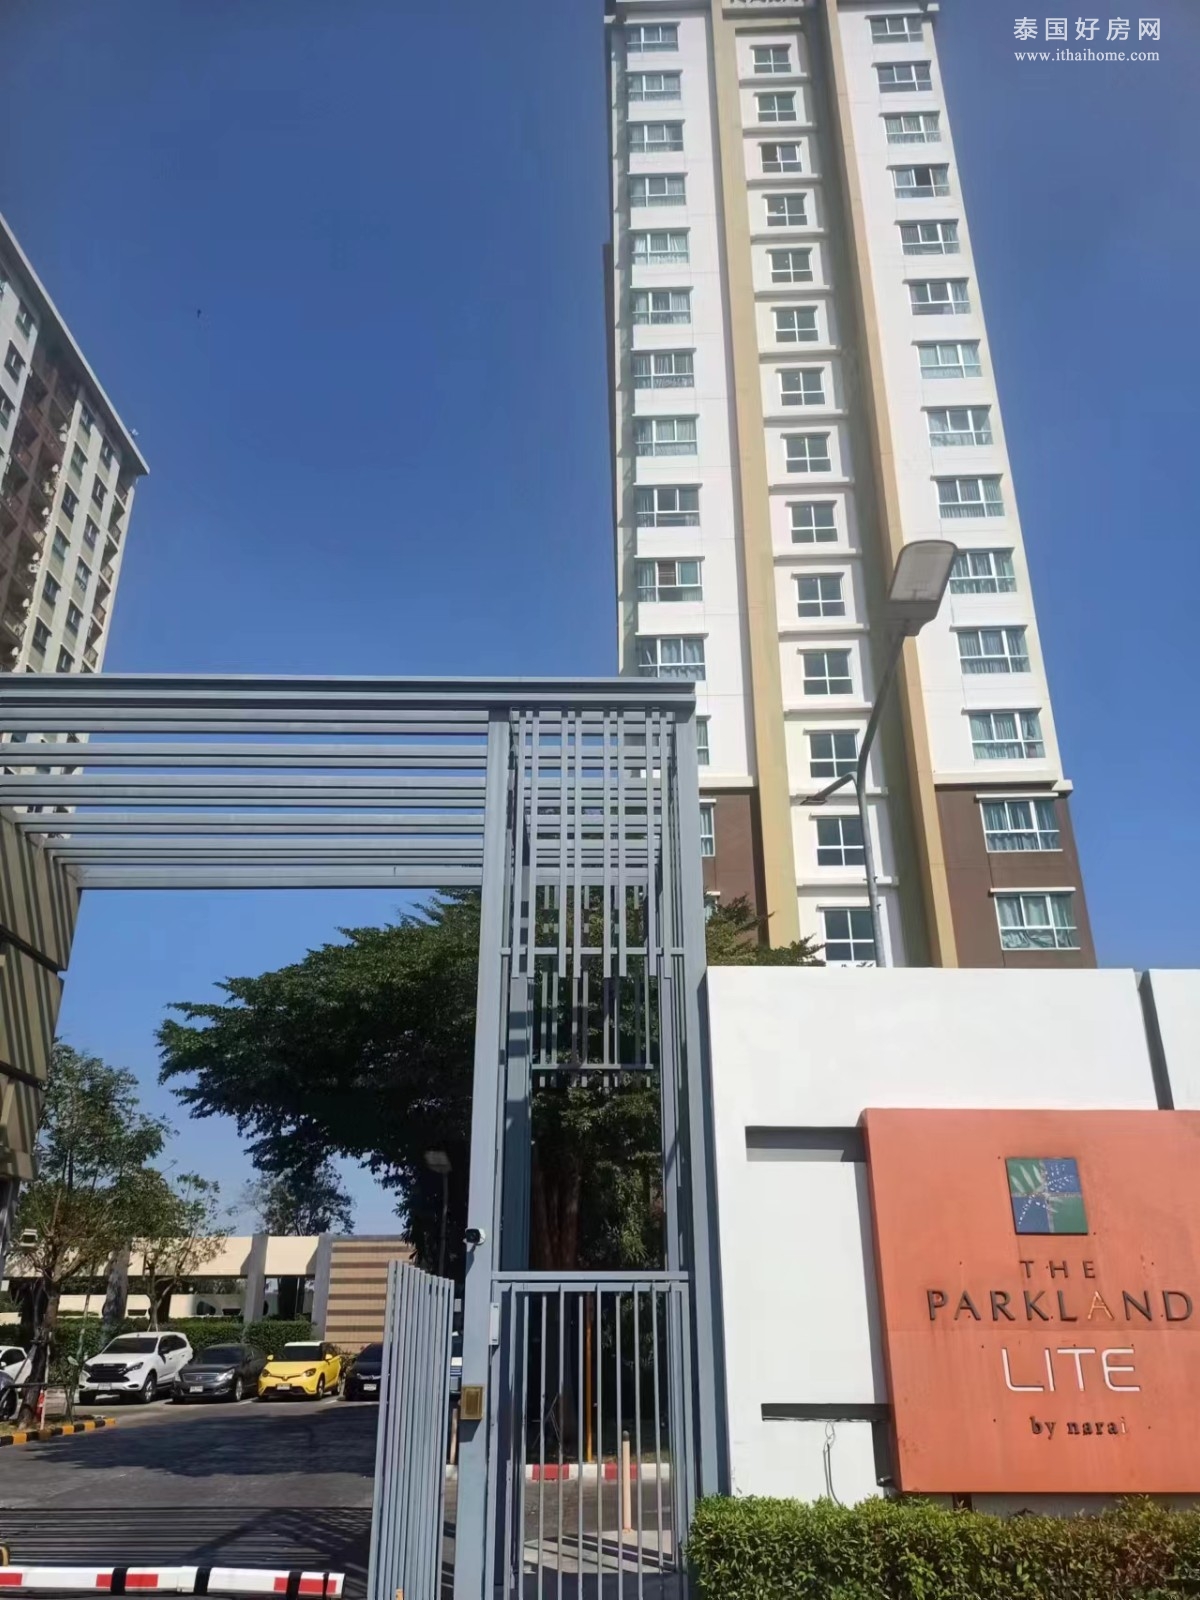 暖武里府 | THE PARKLAND LITE SUKHUMVIT – PAKNAM 公寓出售 1卧 31平米 200万泰铢